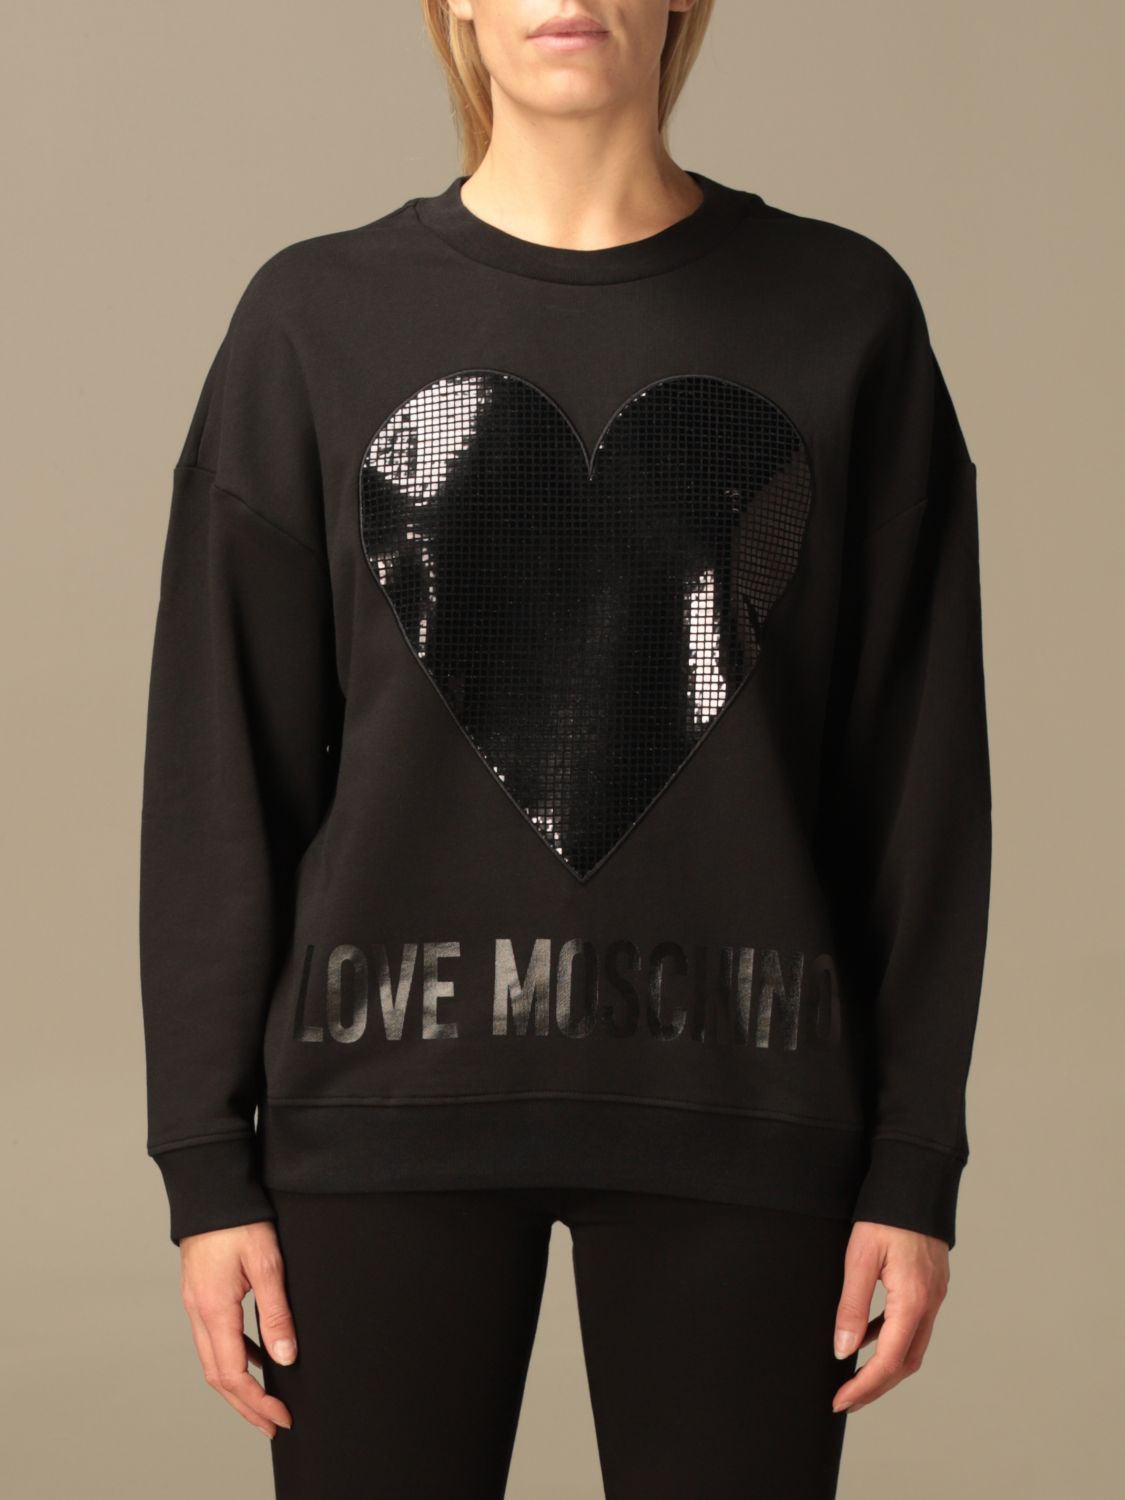 love moschino sweatshirt womens